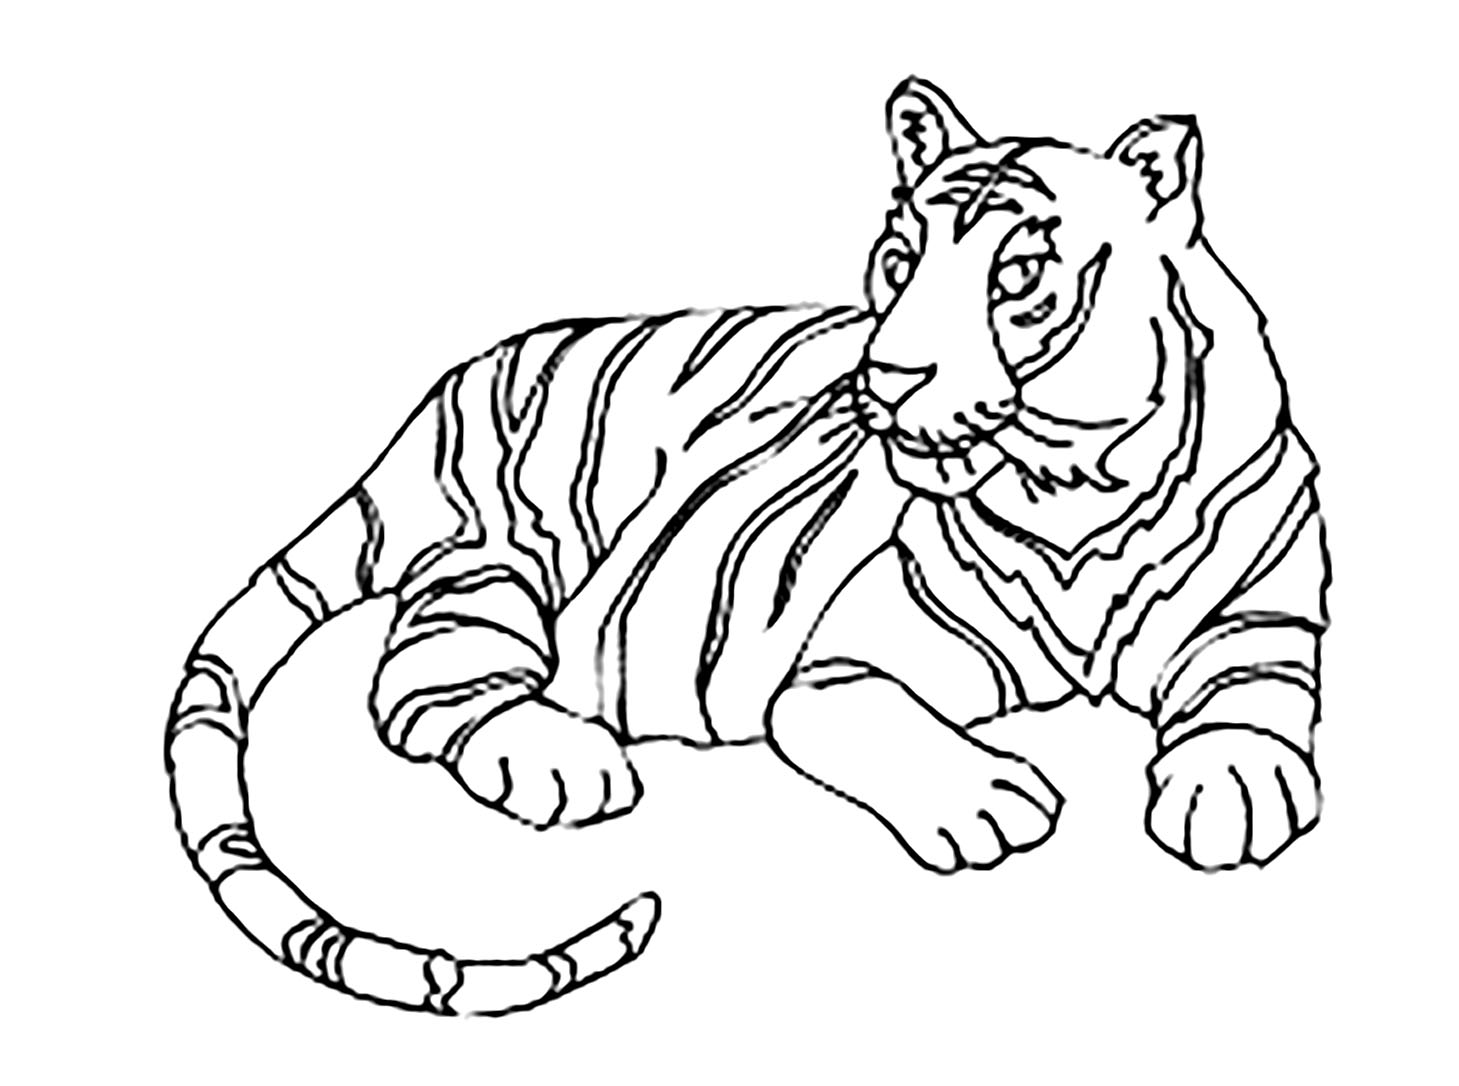 Uma bela coloração simples de tigre para crianças